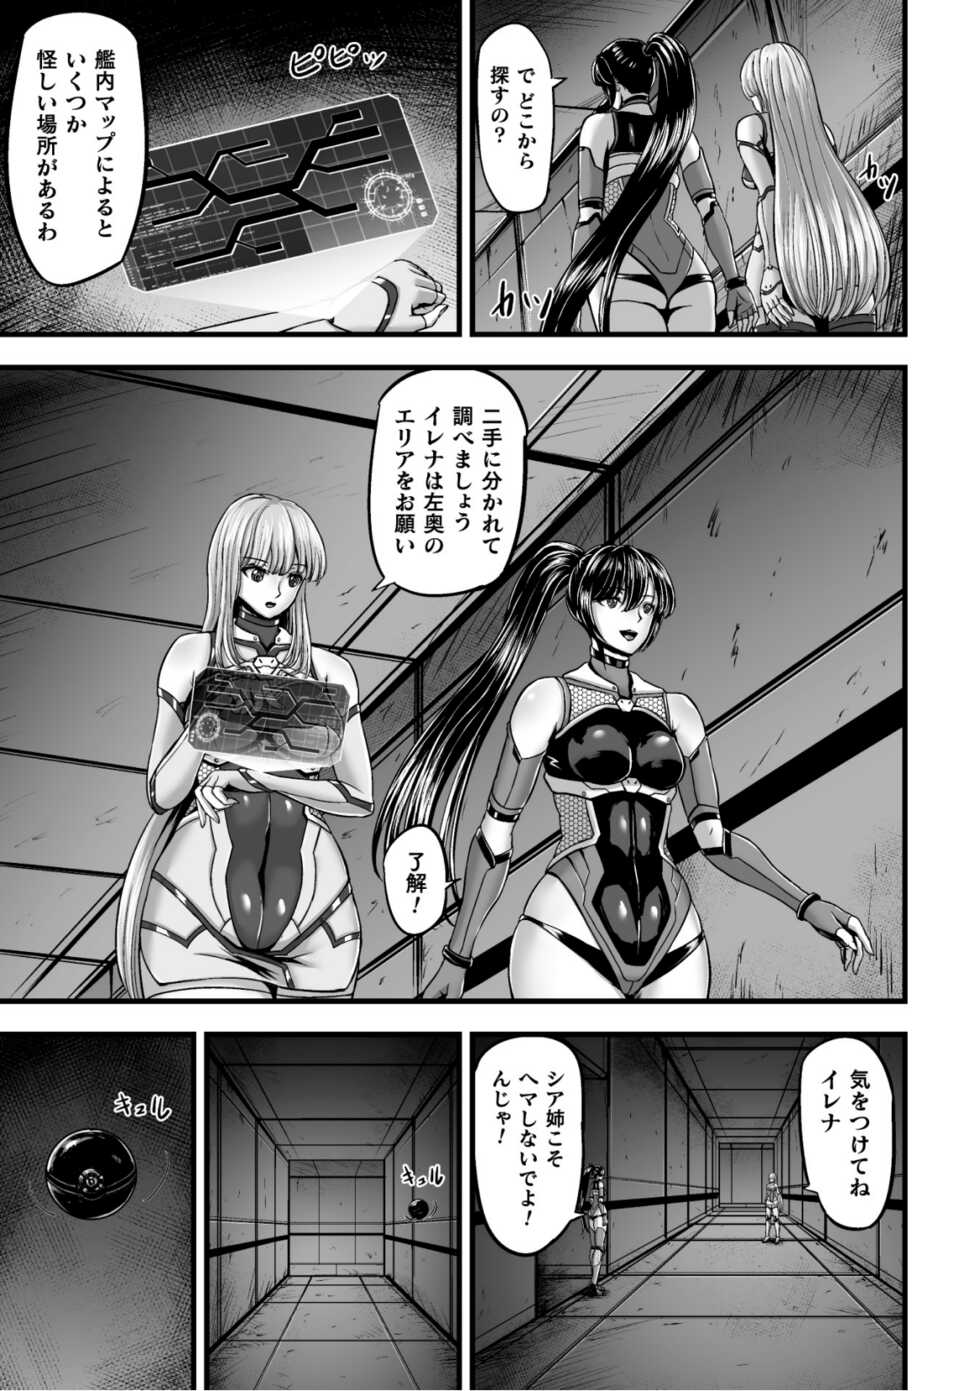 [yuyu] Kangoku Tentacle Battleship Episode 1 - Page 7